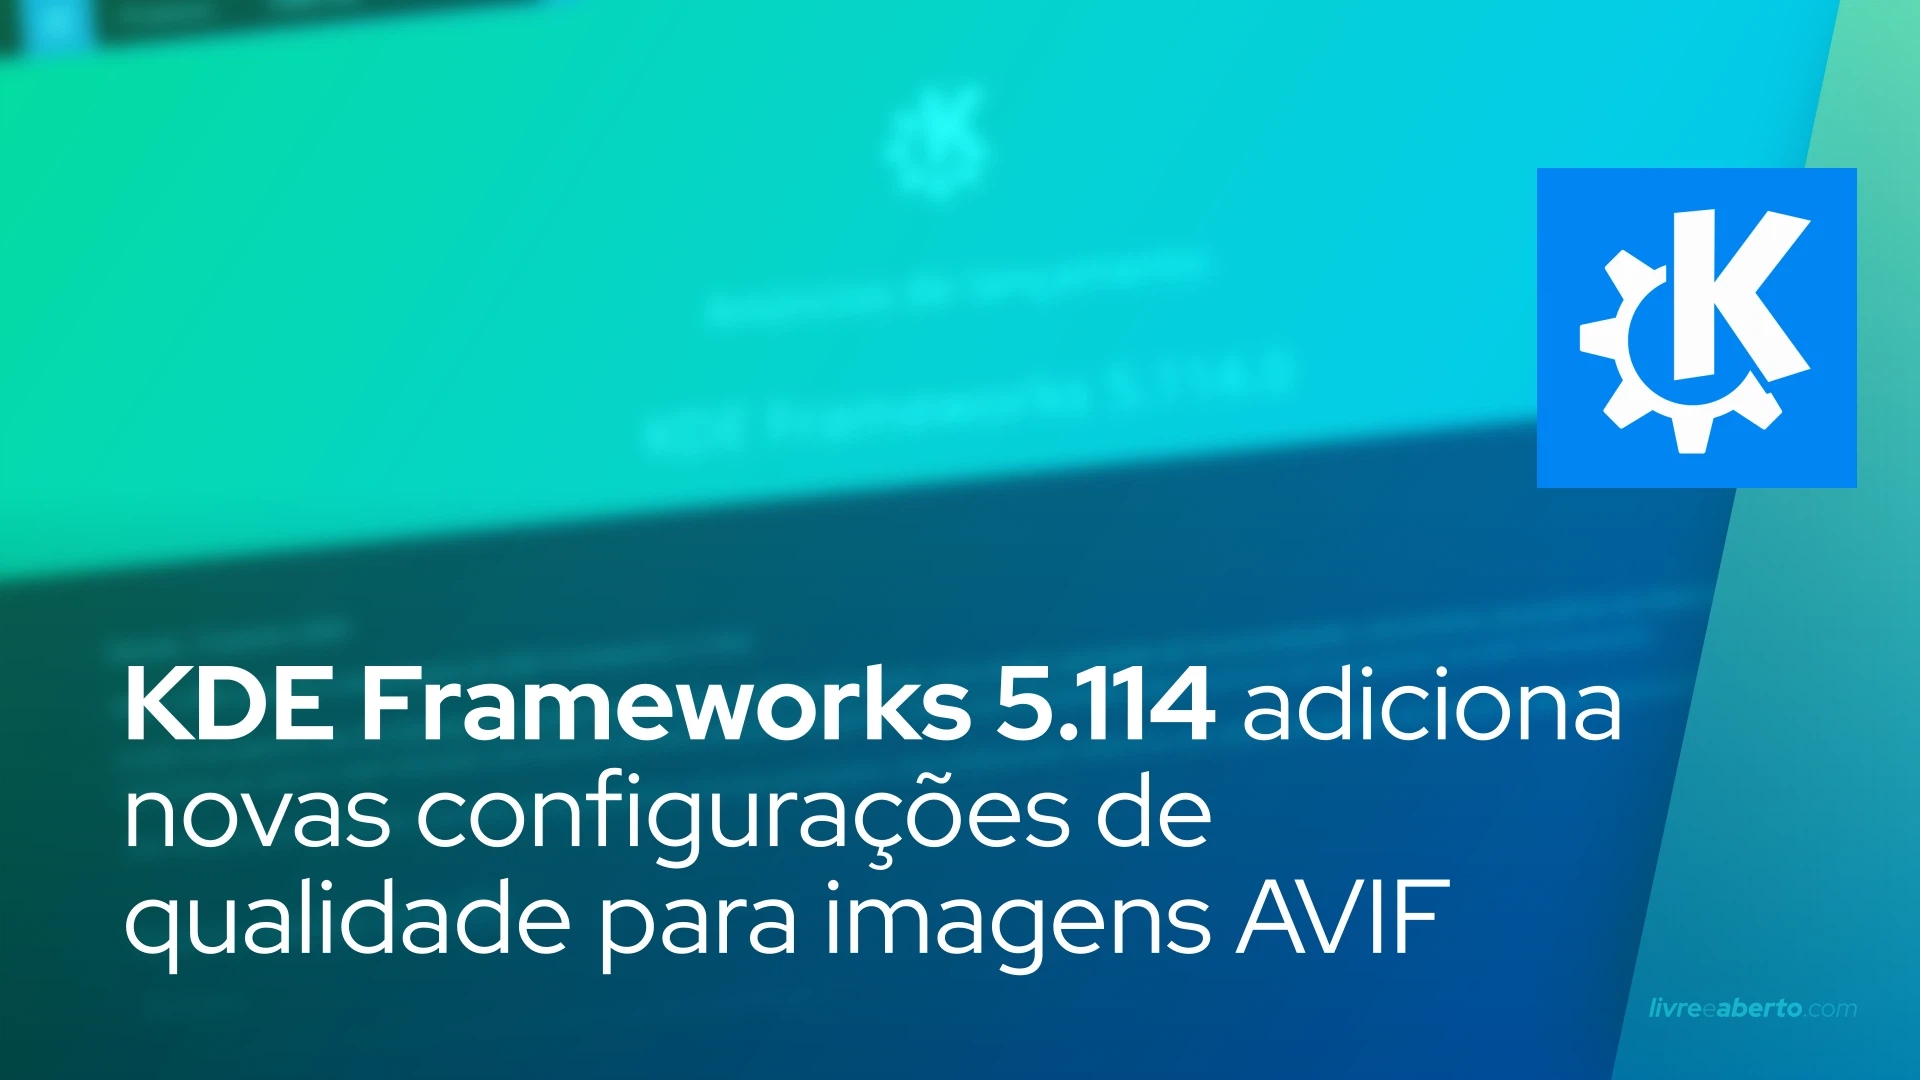 KDE Frameworks 5.114 adiciona novas configurações de qualidade para imagens AVIF, corrige mais bugs